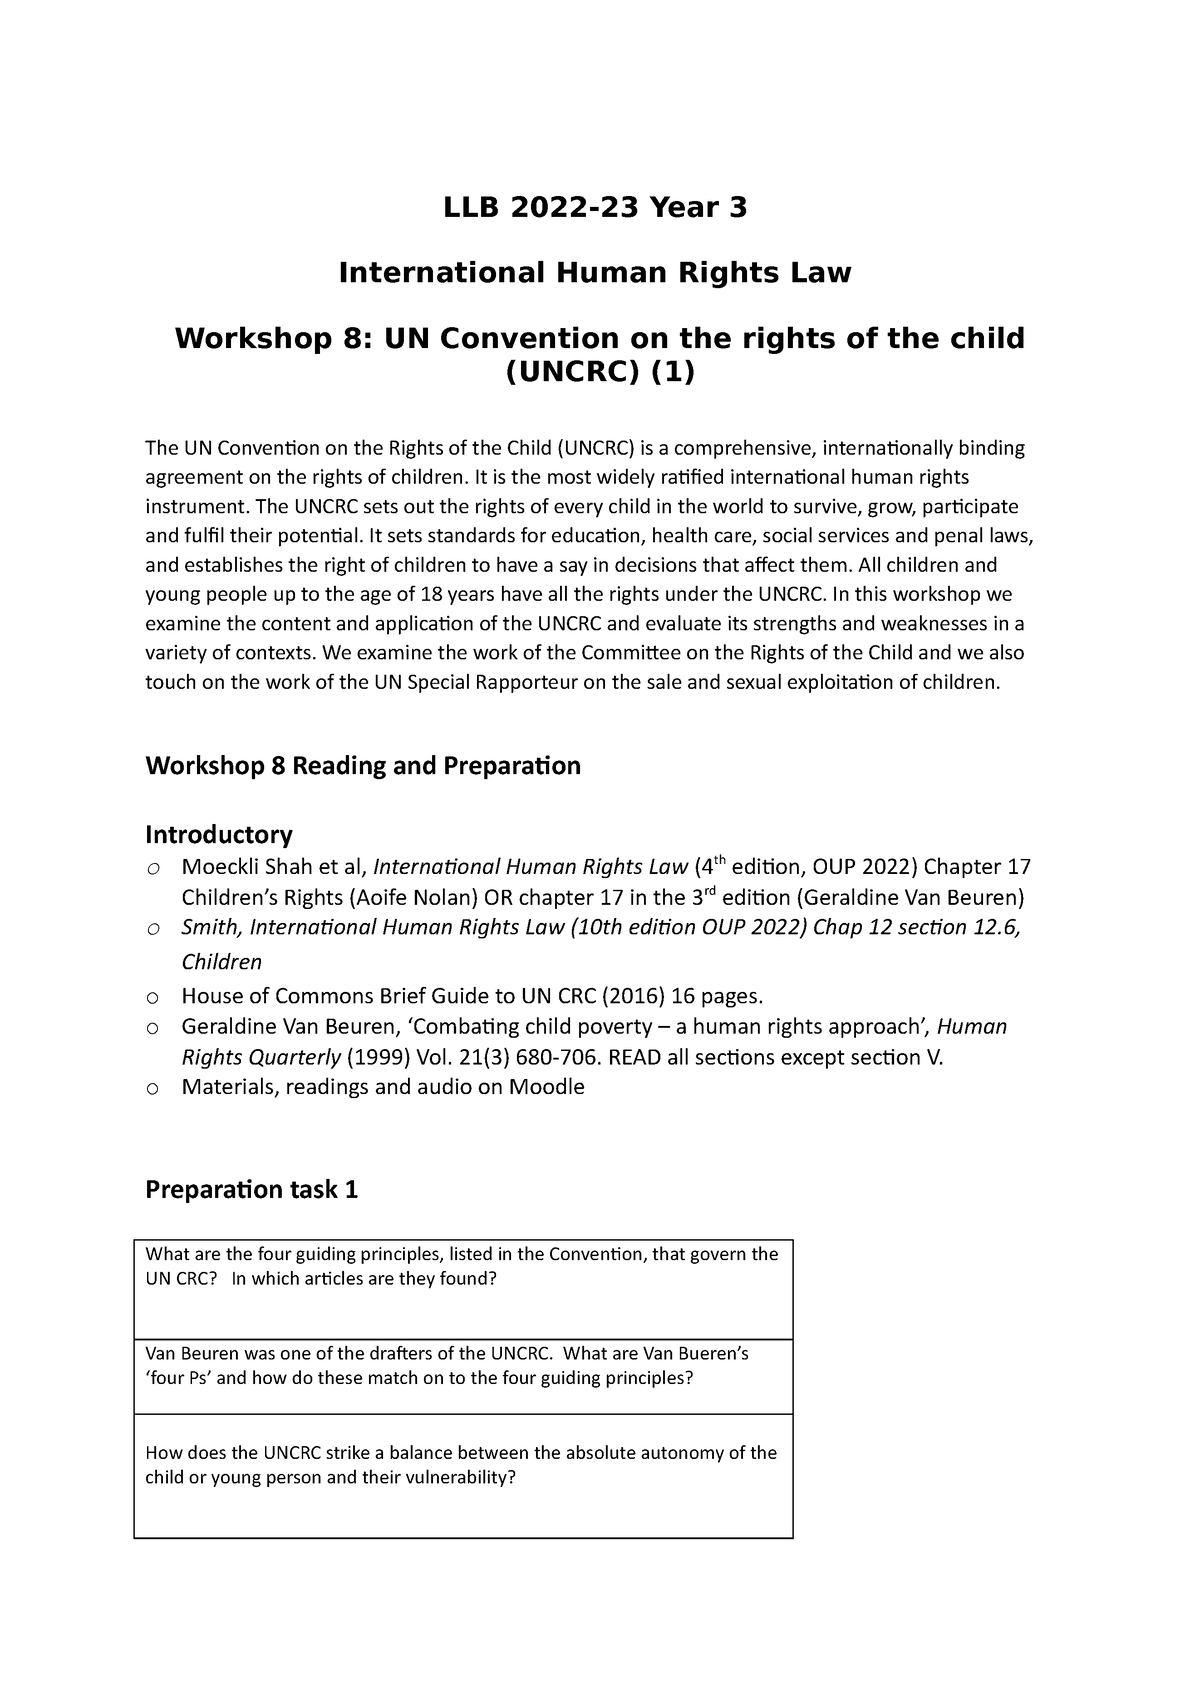 LLB 2223 Workshops 8 9 Uncrc - LLB 2022-23 Year 3 International Human ...